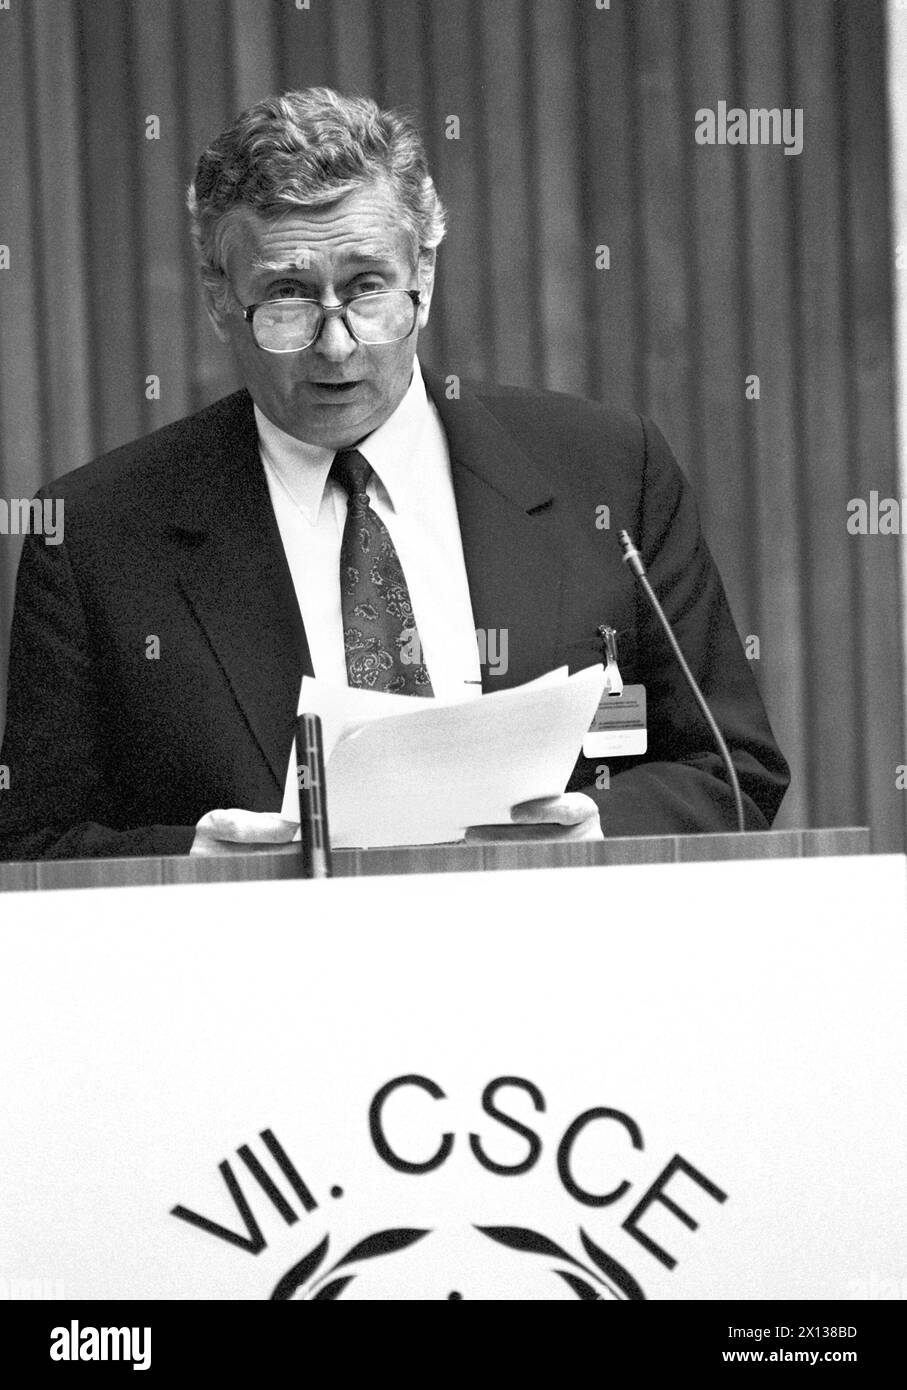 Vienna il 2 luglio 1991: Settima conferenza internazionale della CSCE al parlamento austriaco. Nella foto: Il primo ministro ungherese Josef Antall tiene un discorso. - 19910702 PD0007 - Rechteinfo: Diritti gestiti (RM) Foto Stock